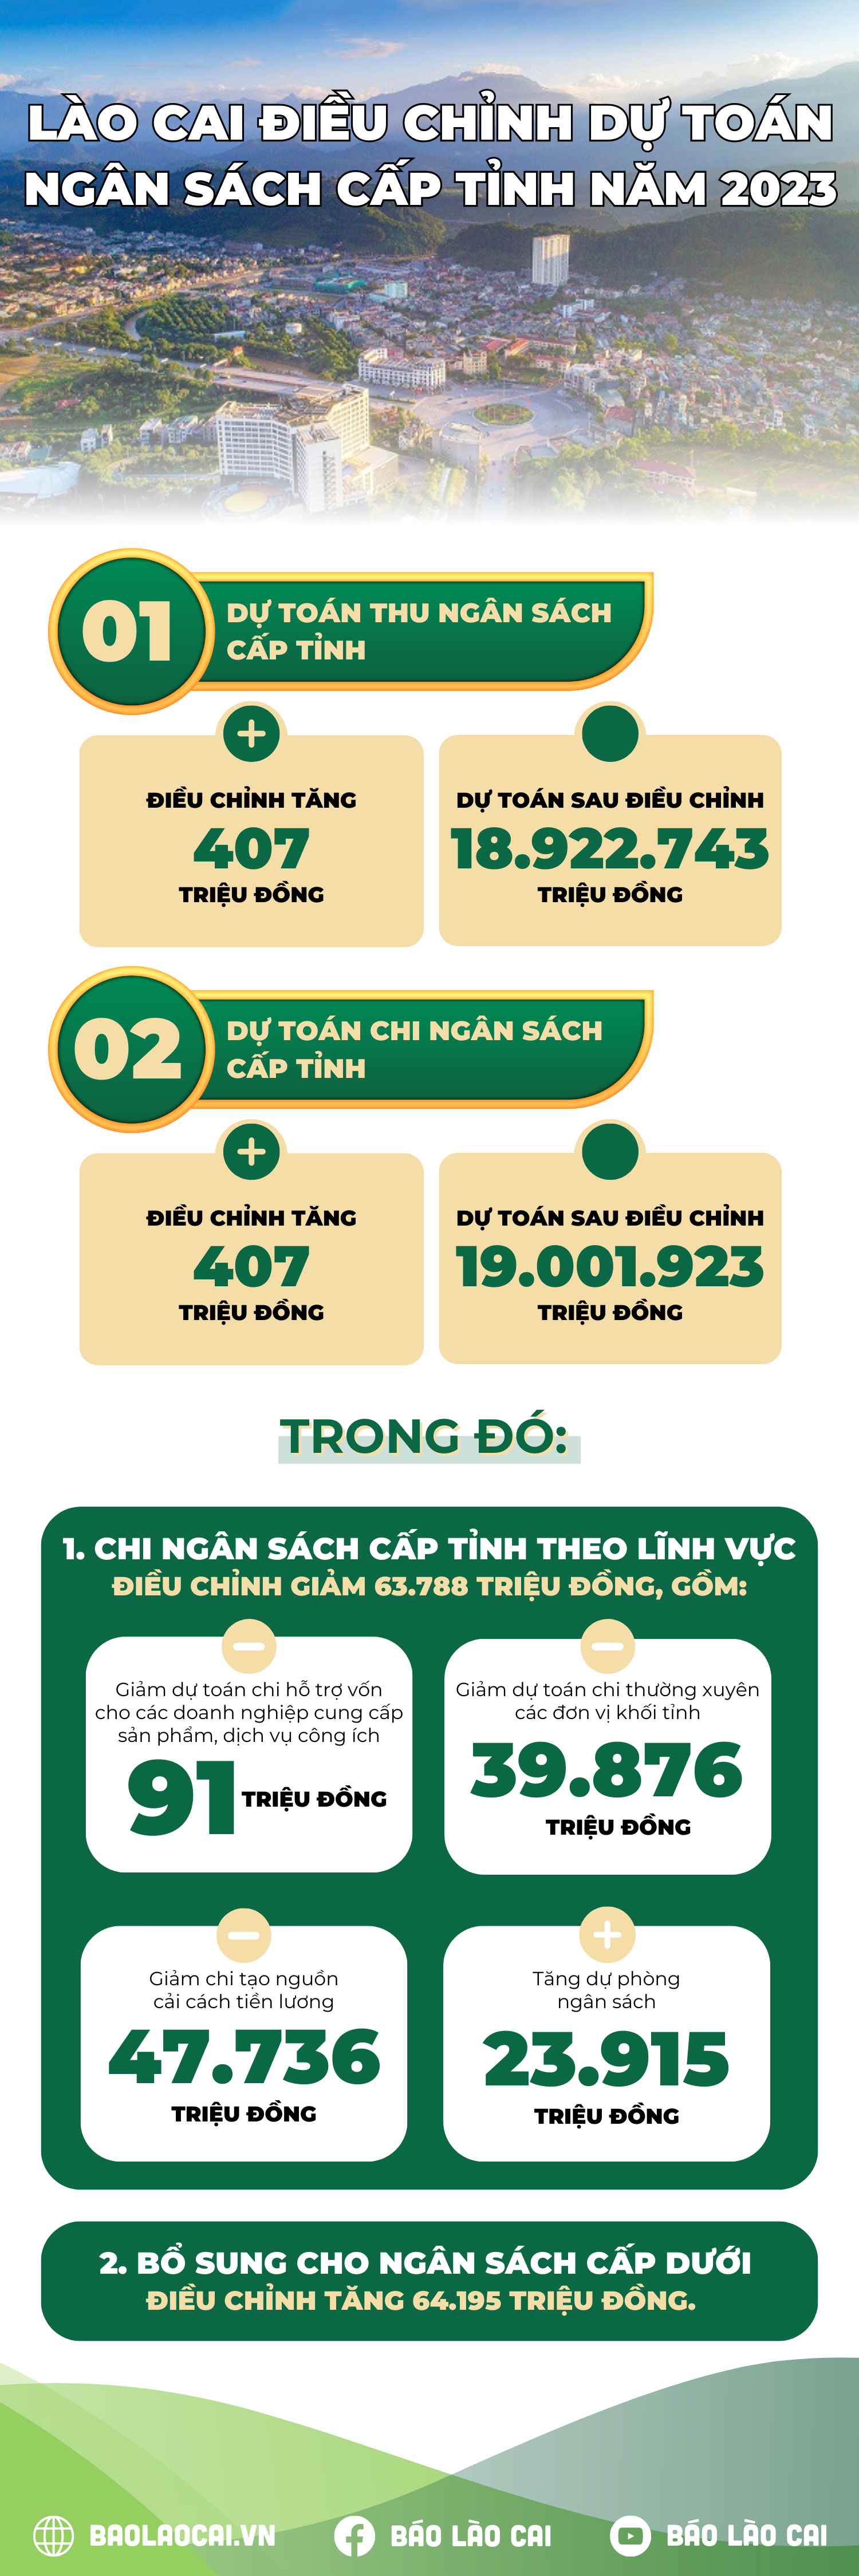 Lào Cai điều chỉnh dự toán ngân sách cấp tỉnh năm 2023